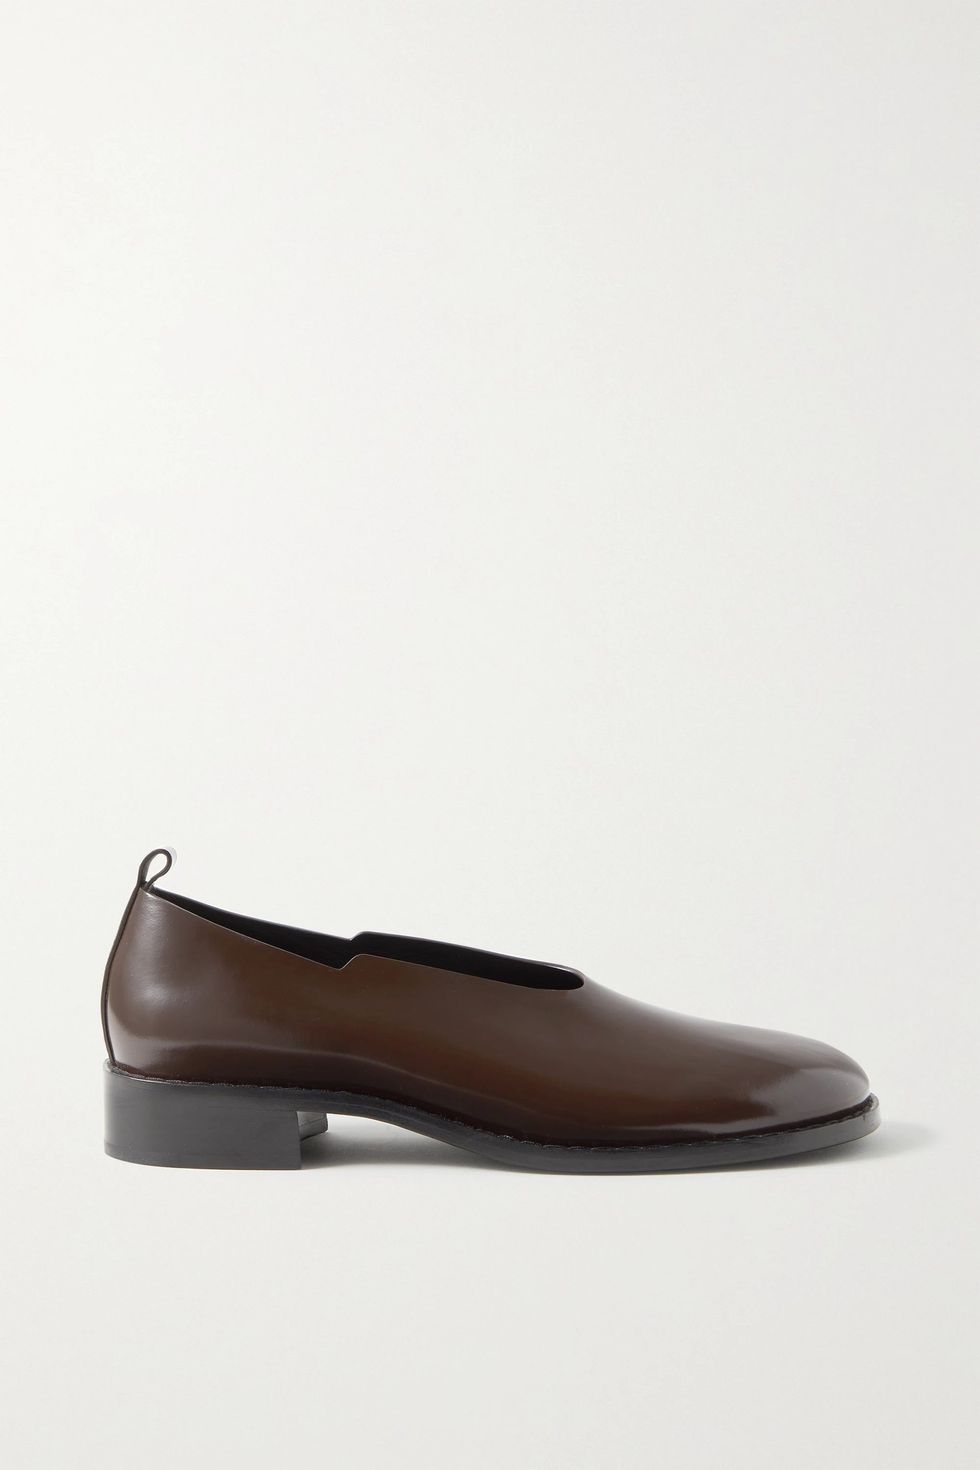 簡約風格樂福鞋推薦：The Row Monceau栗色亮皮樂福鞋